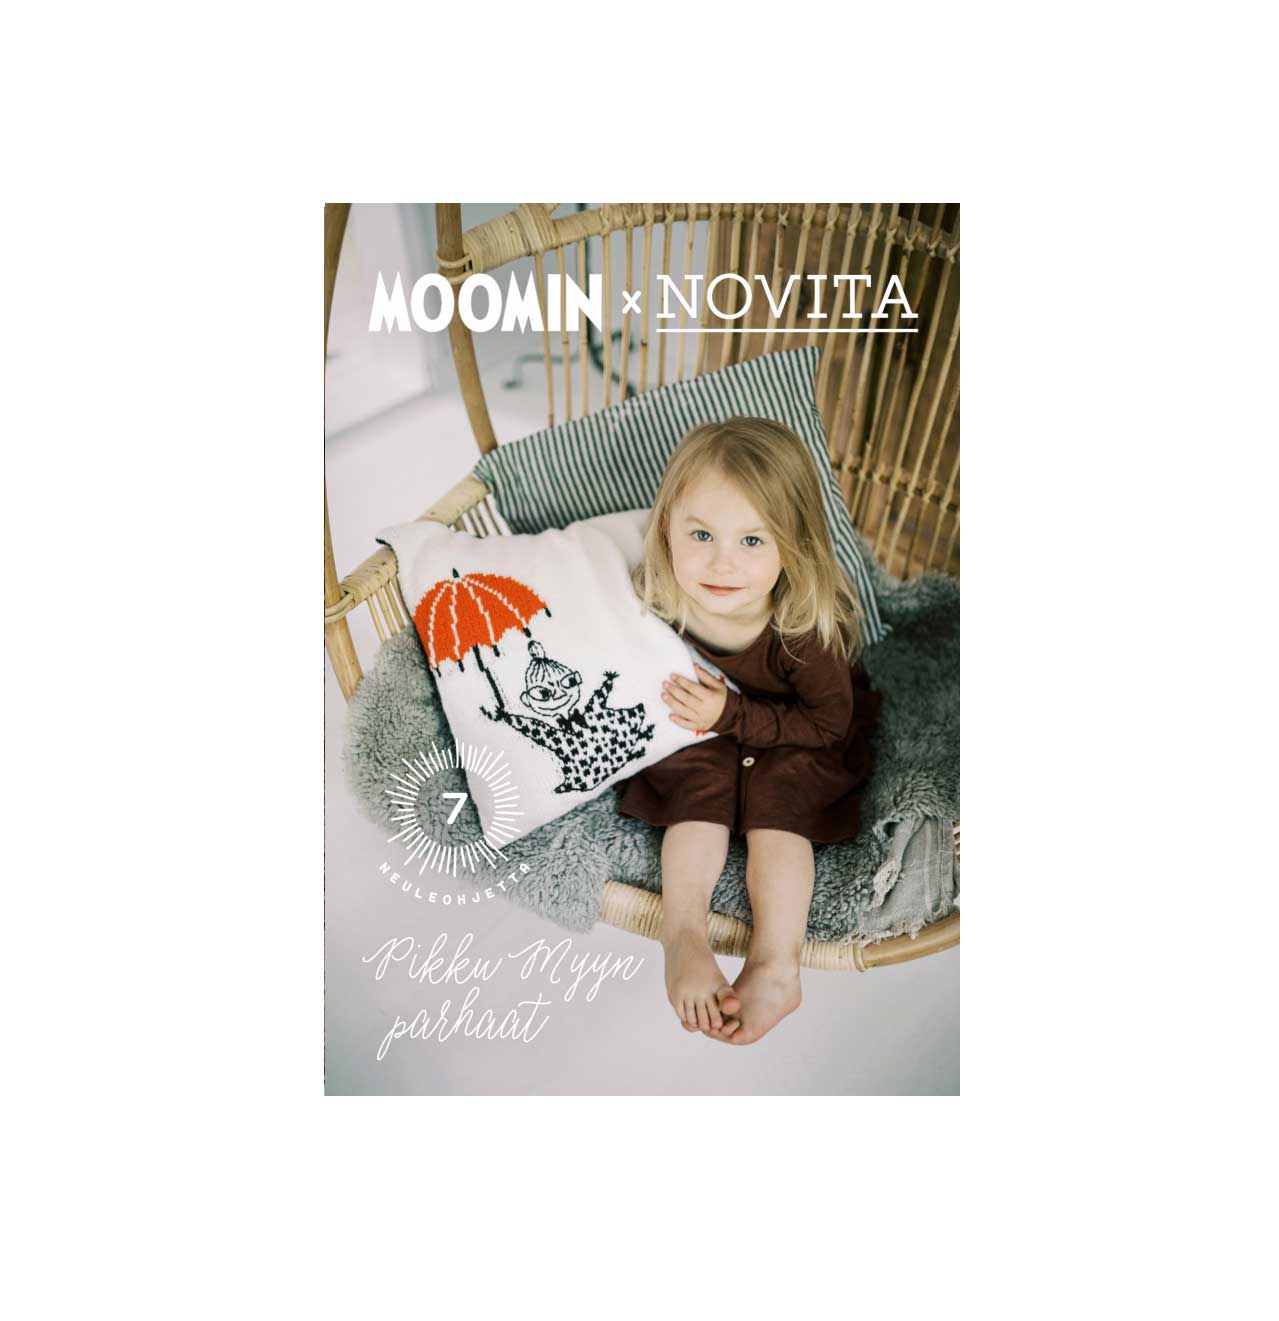 Журнал Moomin x Novita - Pikku Myyn parhaat, 2019